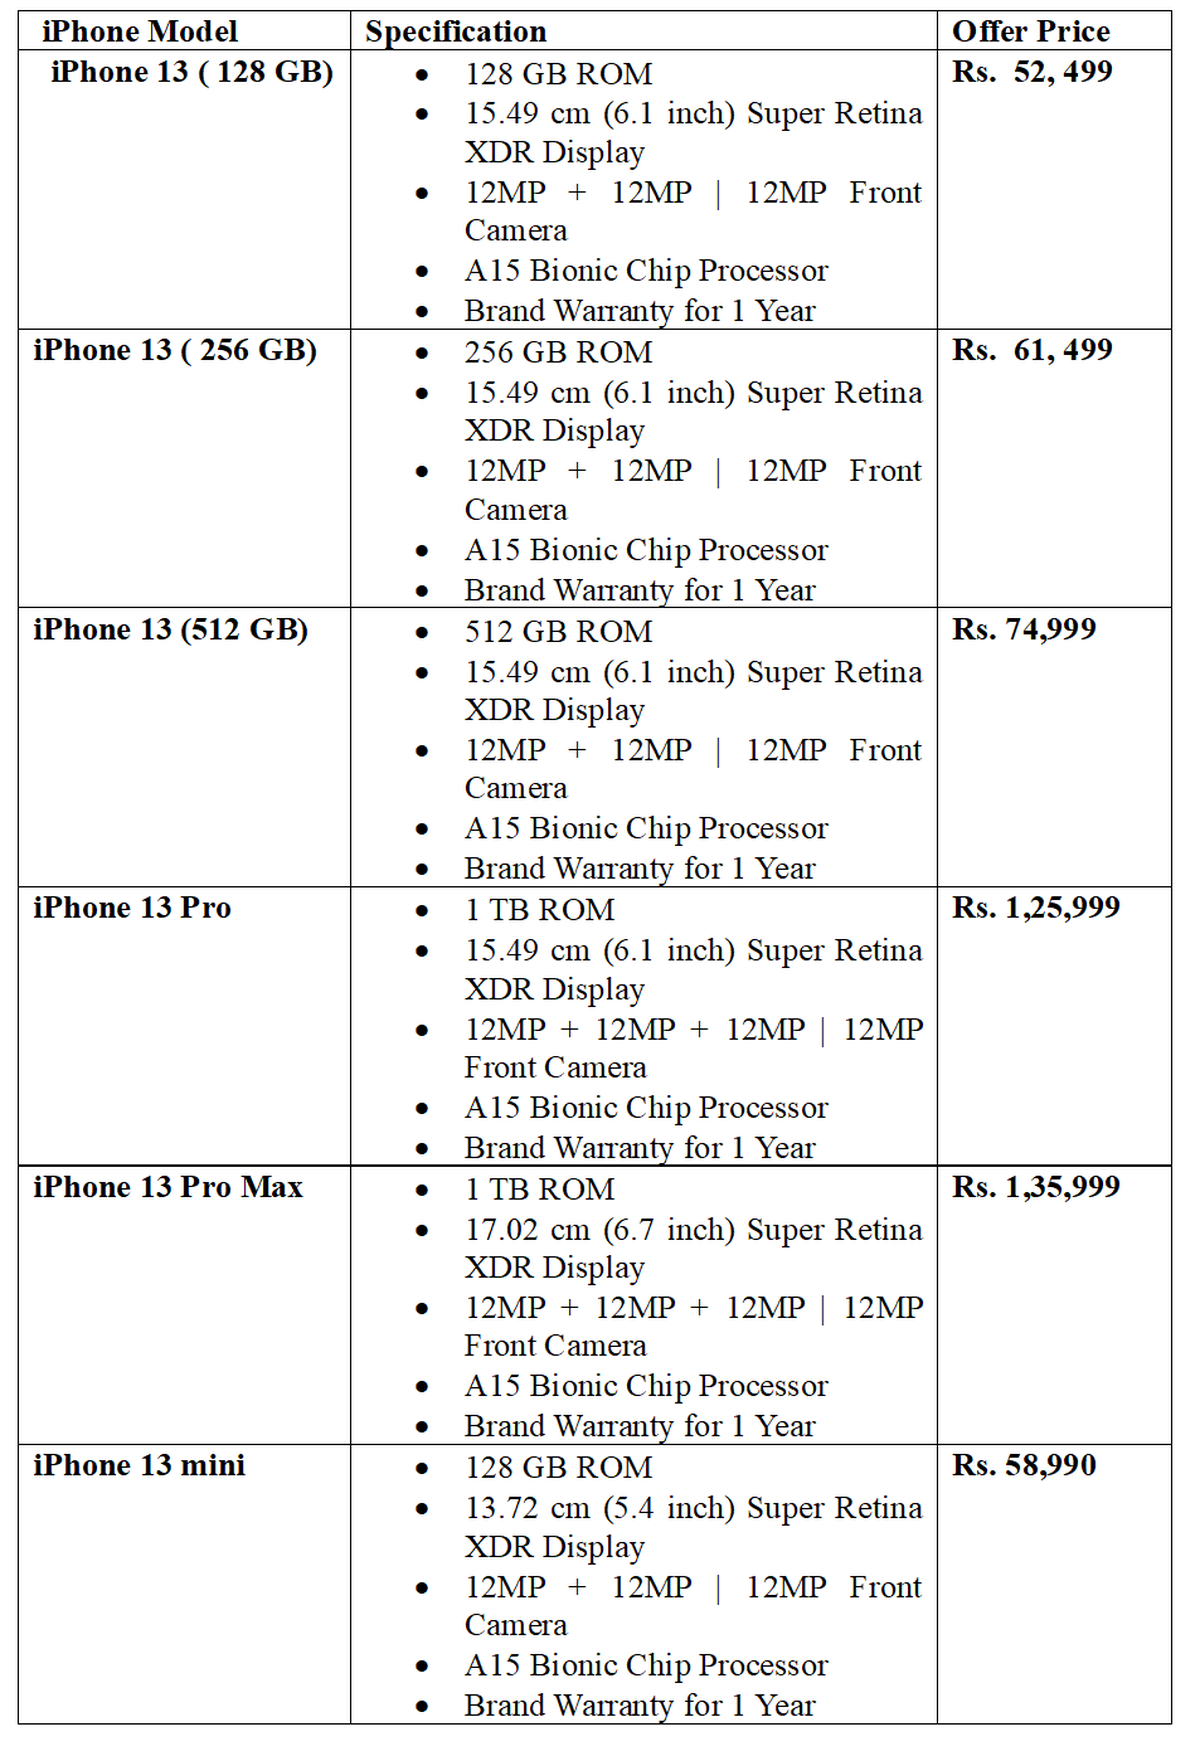 Flipkart is offering big discounts on iPhone 13, iPhone 14 Pro